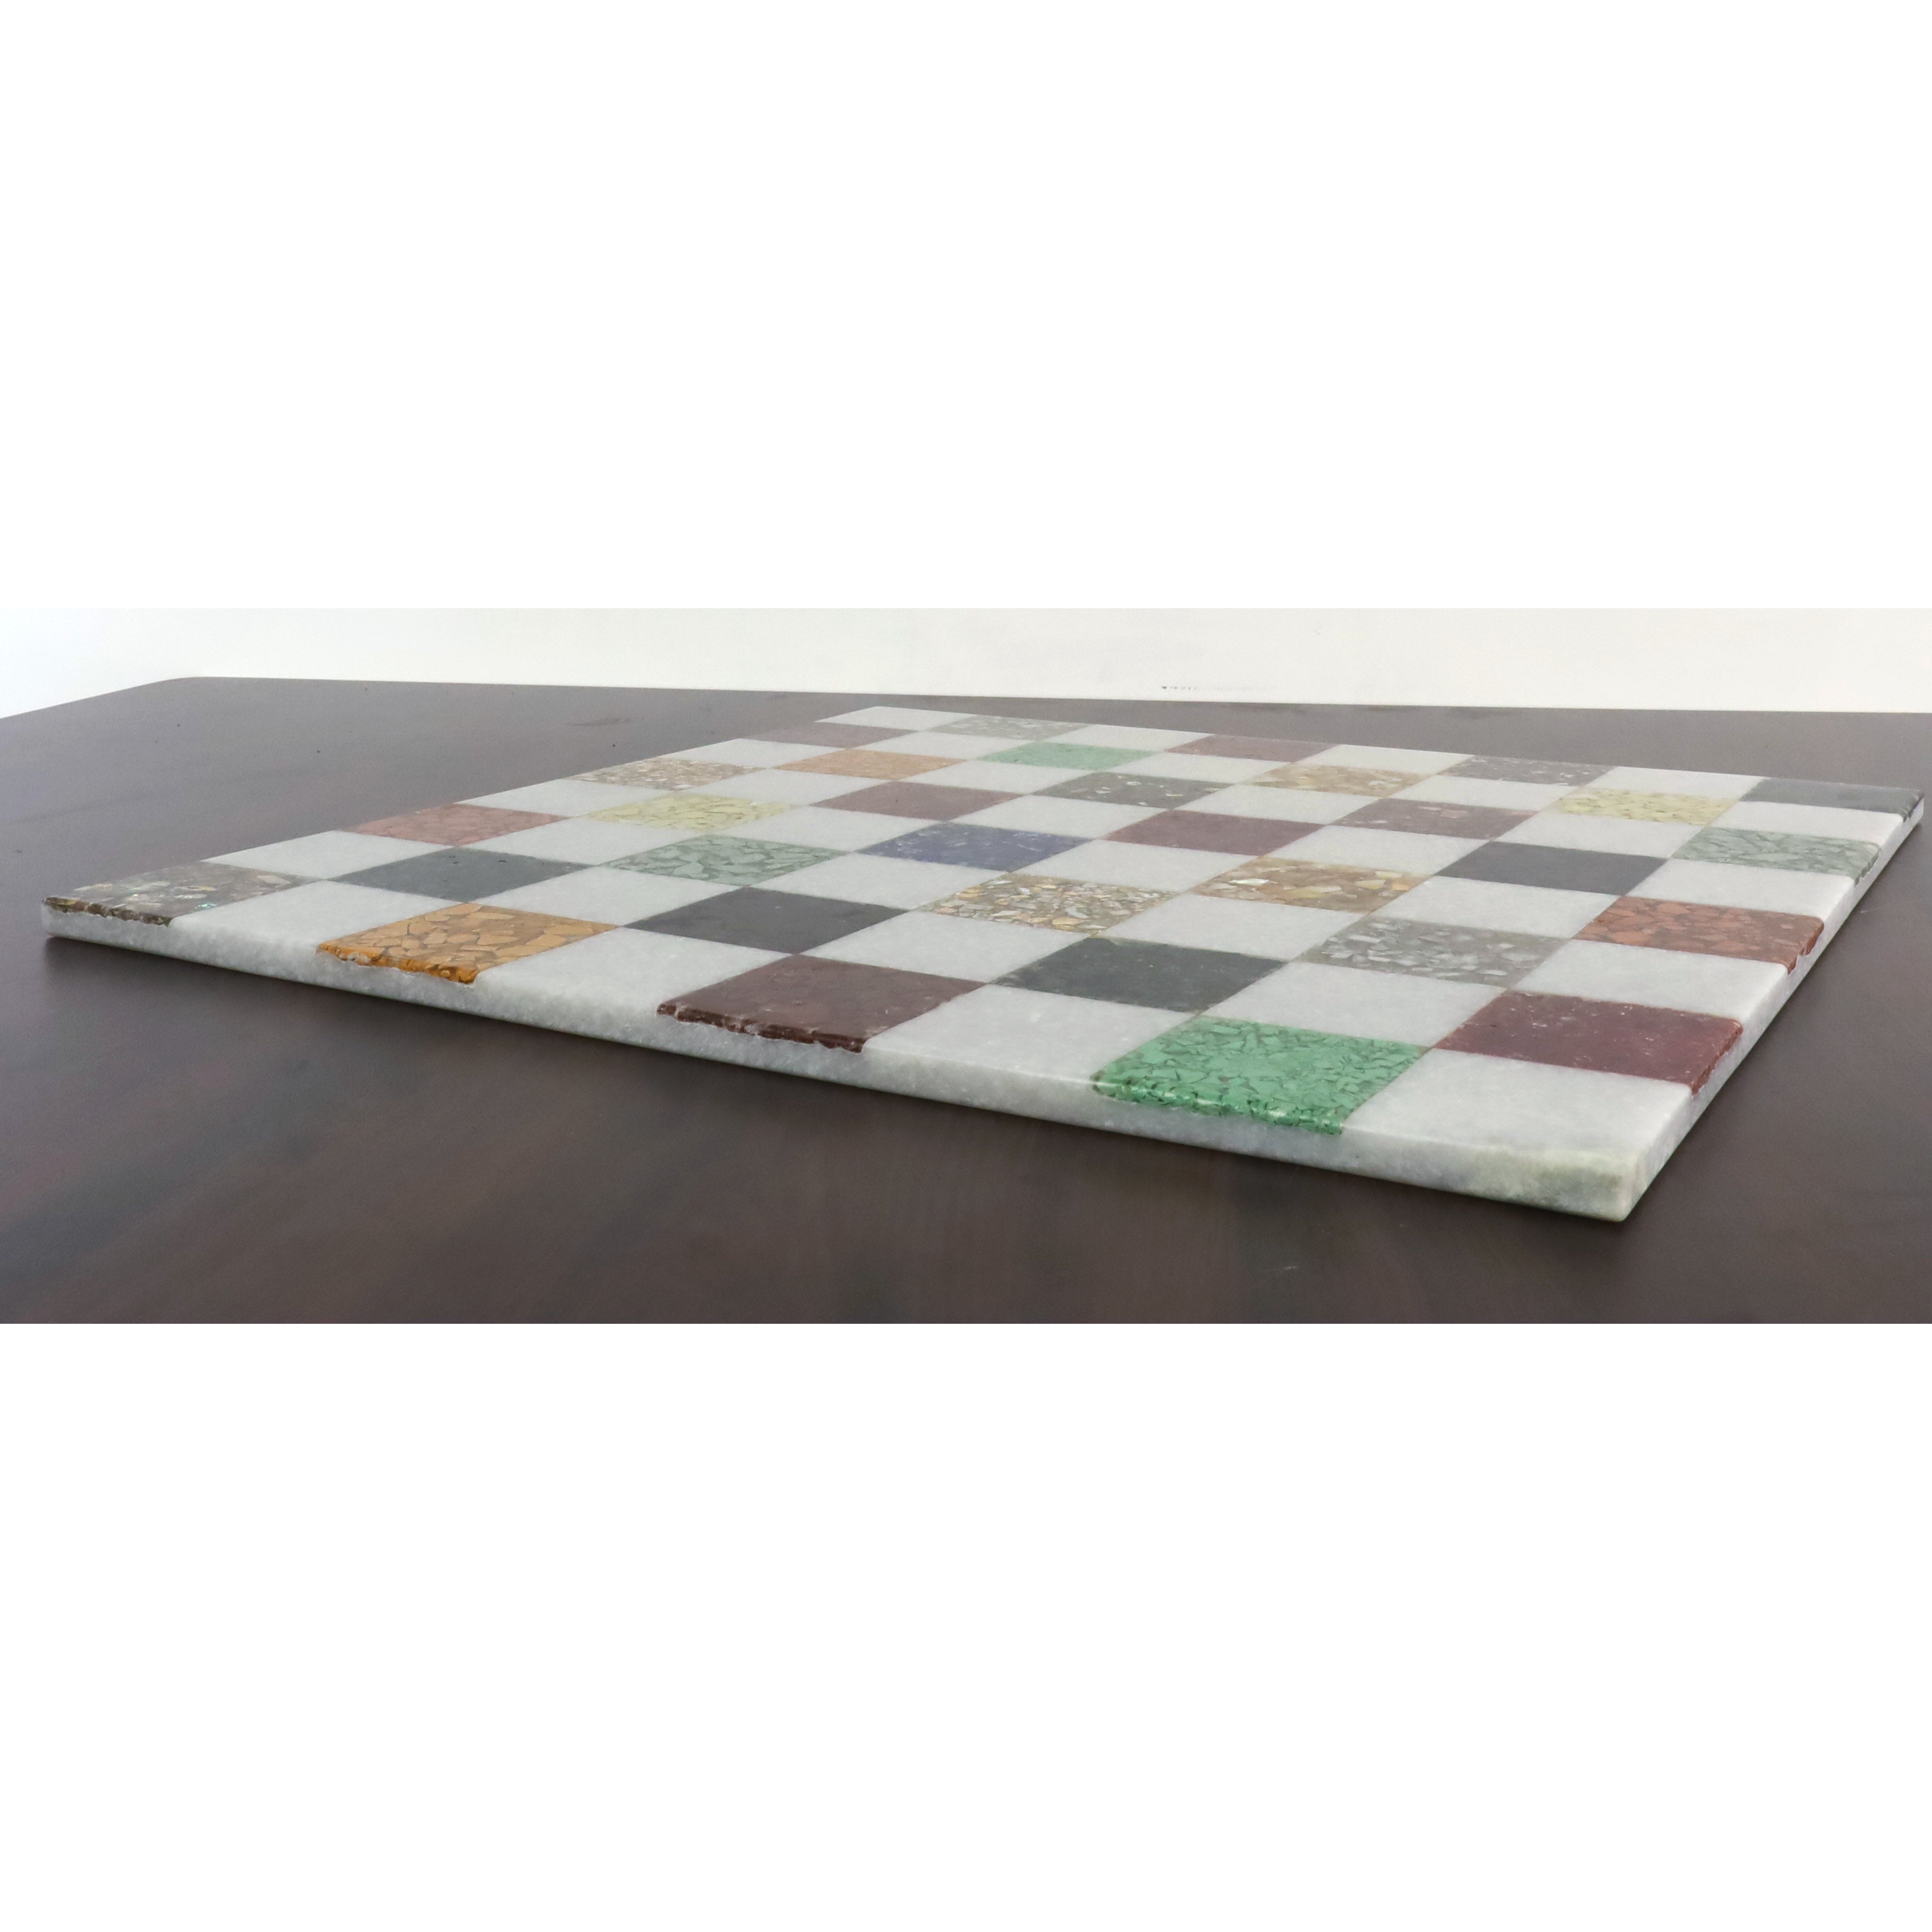 18'' Borderless Marble Luxury Chess Board-White & Multi Coloured Semi-Precious Stones